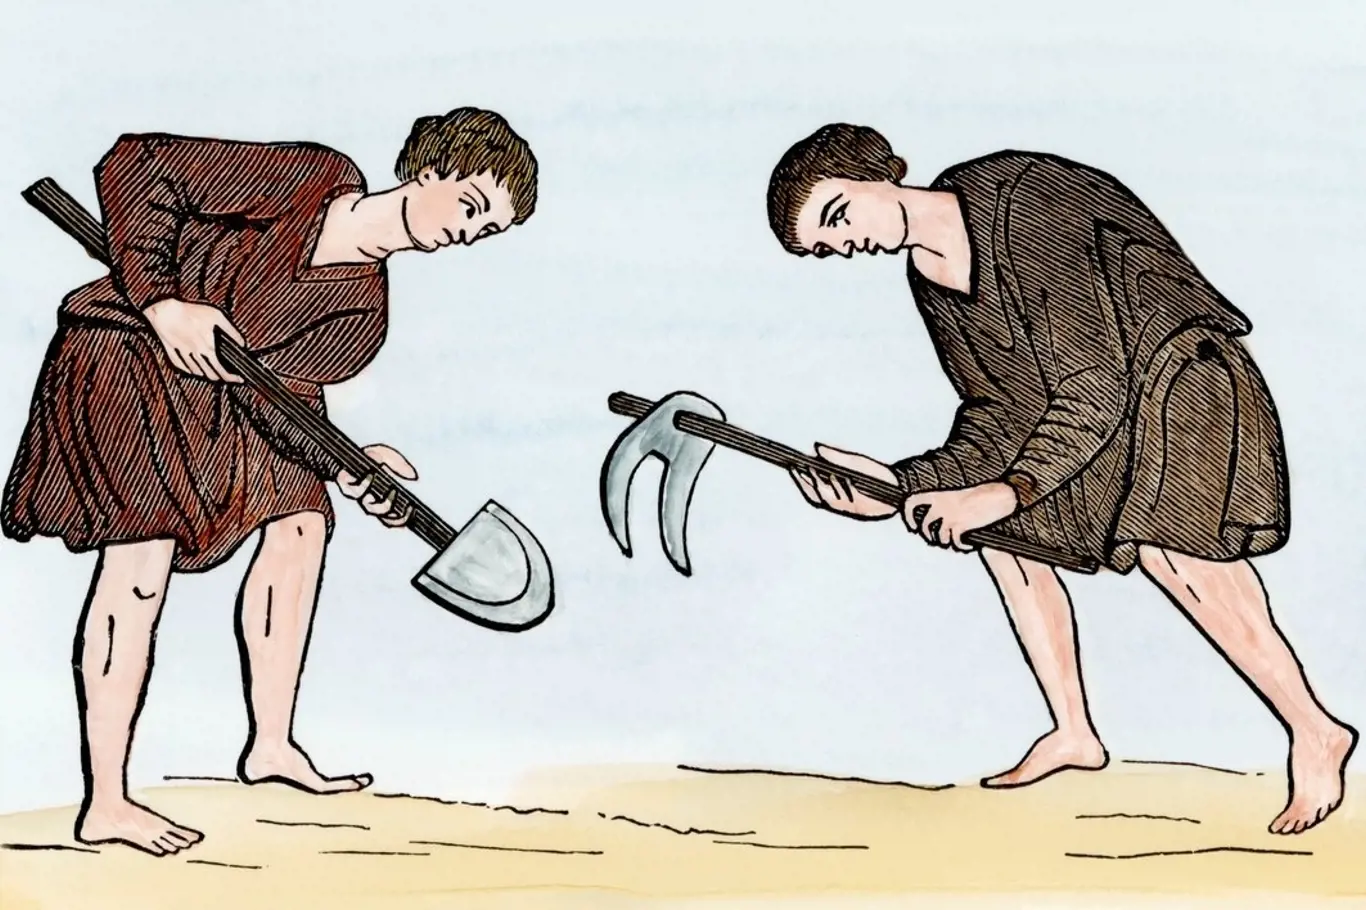 Středověcí poddaní často vykonávali otrockou práci.